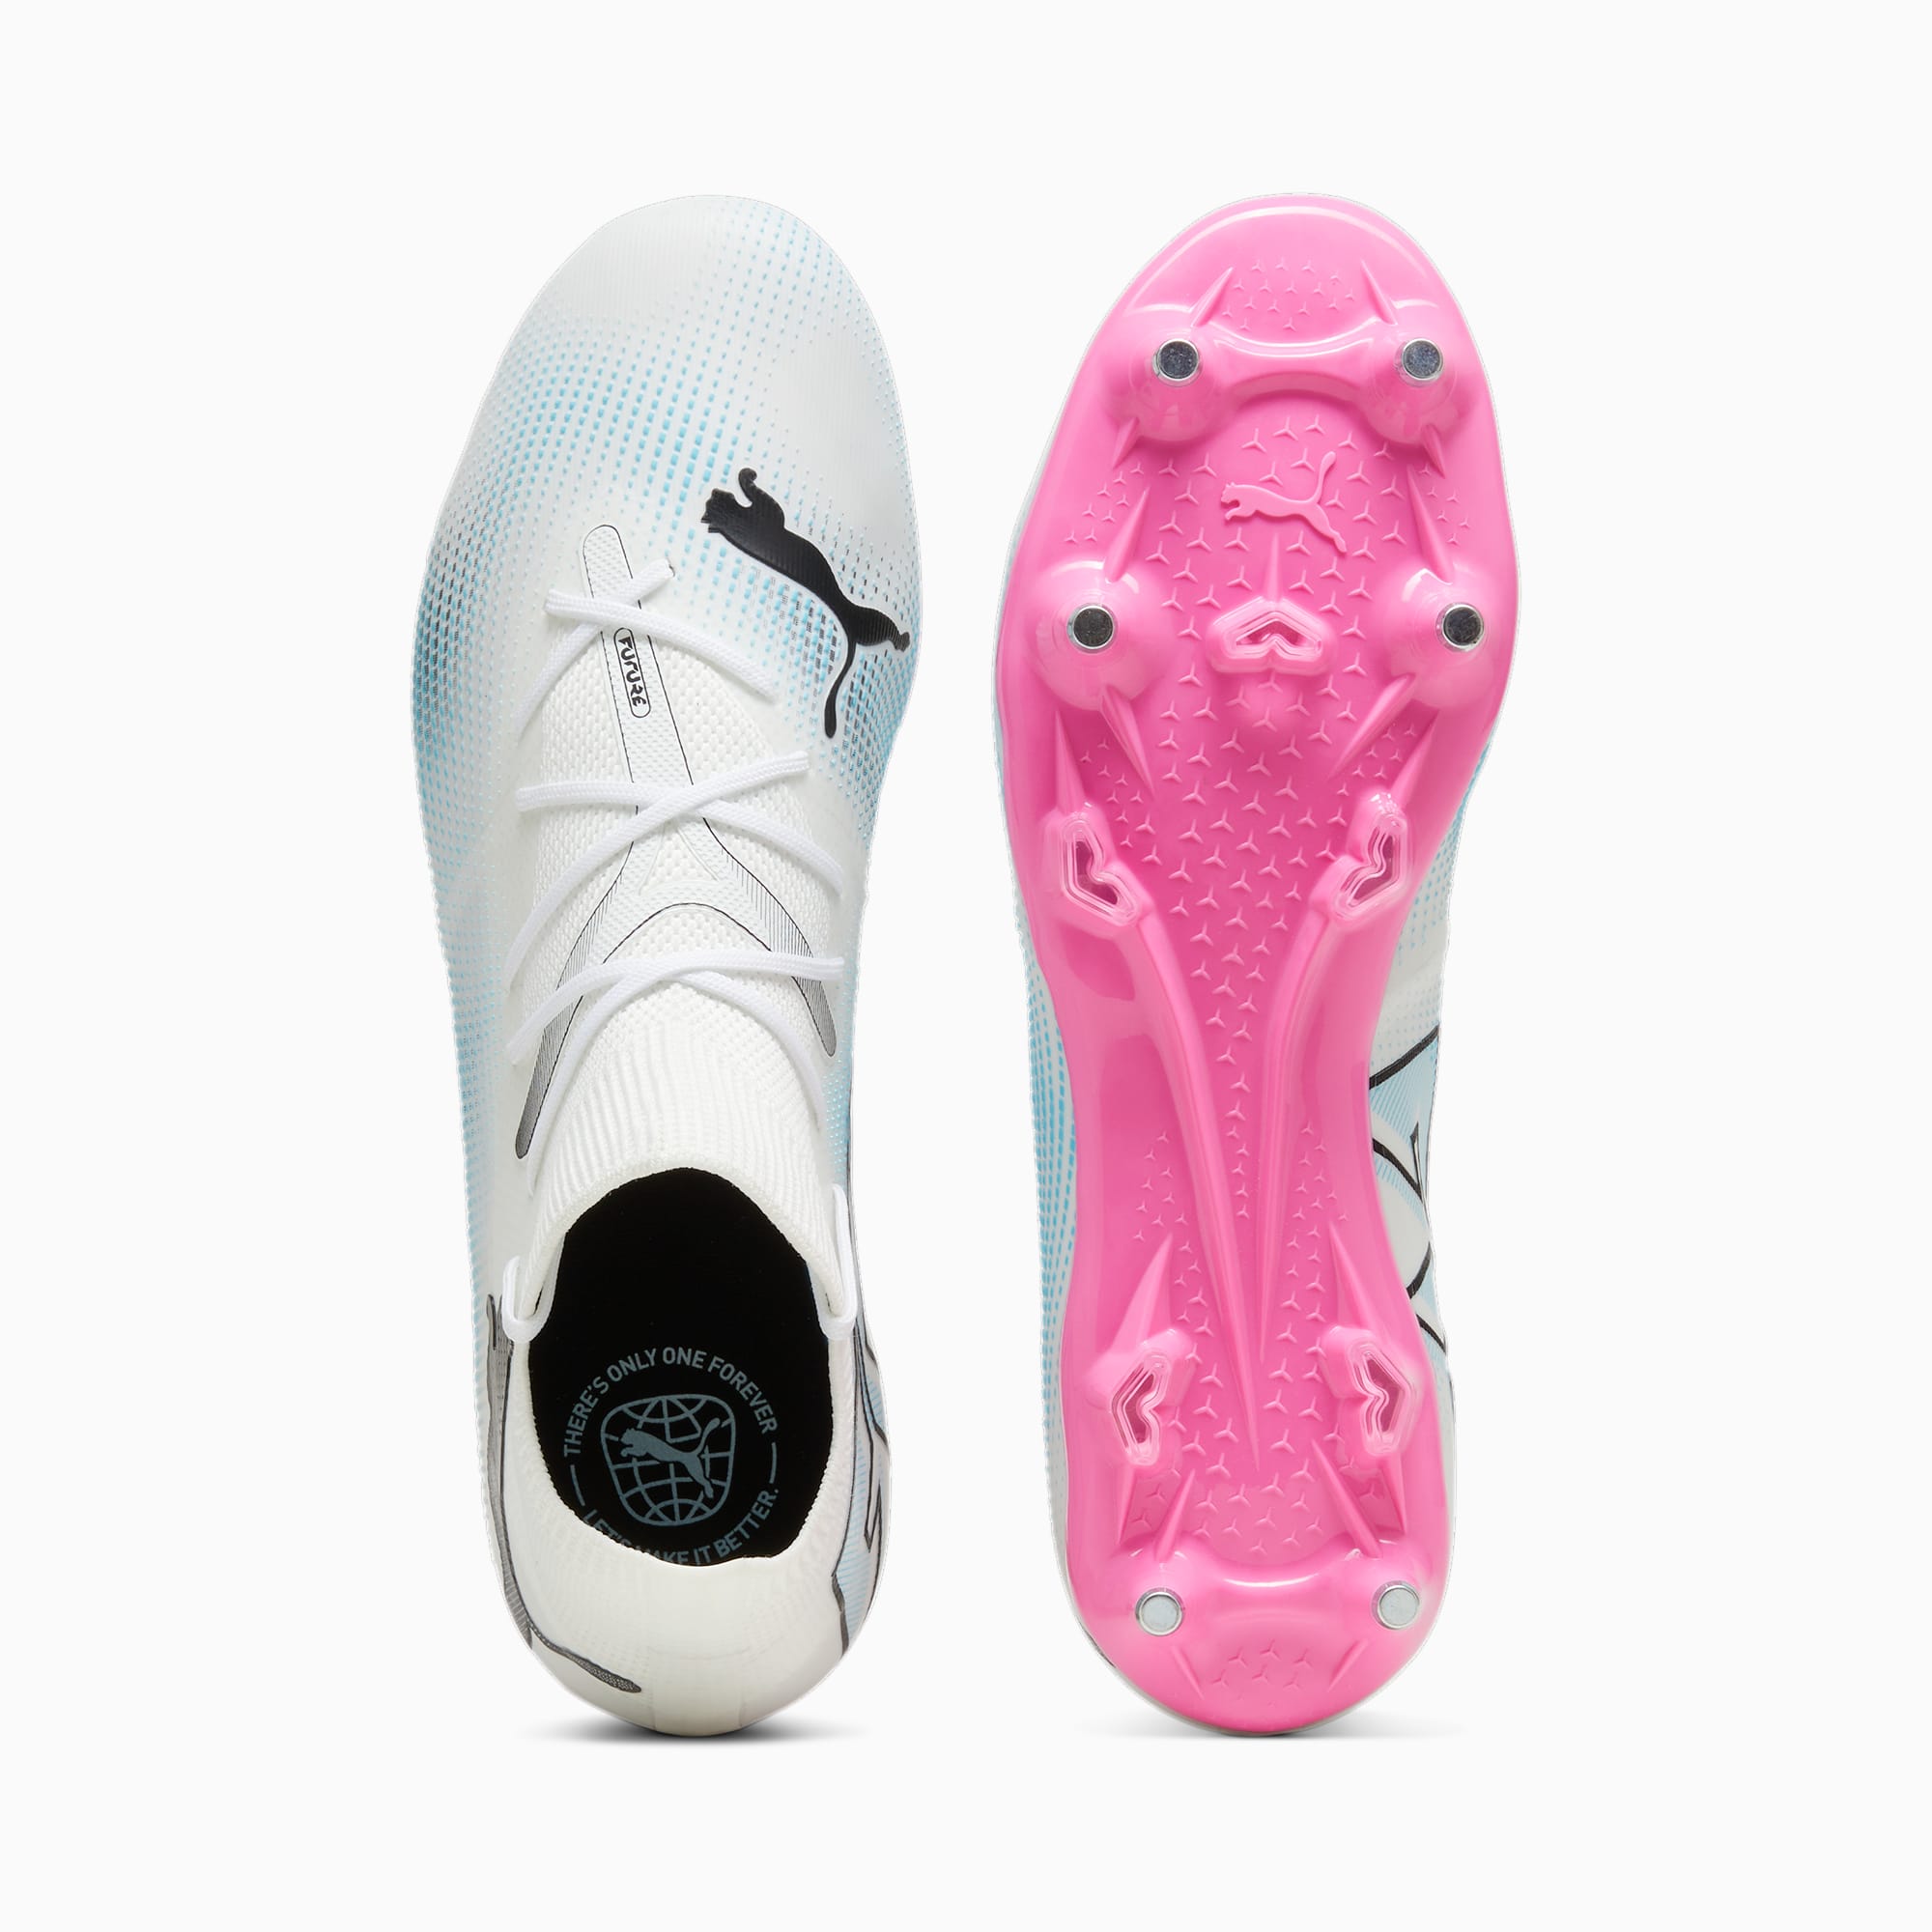 PUMA Chaussures De Football FUTURE 7 MATCH MxSG Pour Homme, Blanc/Rose/Noir